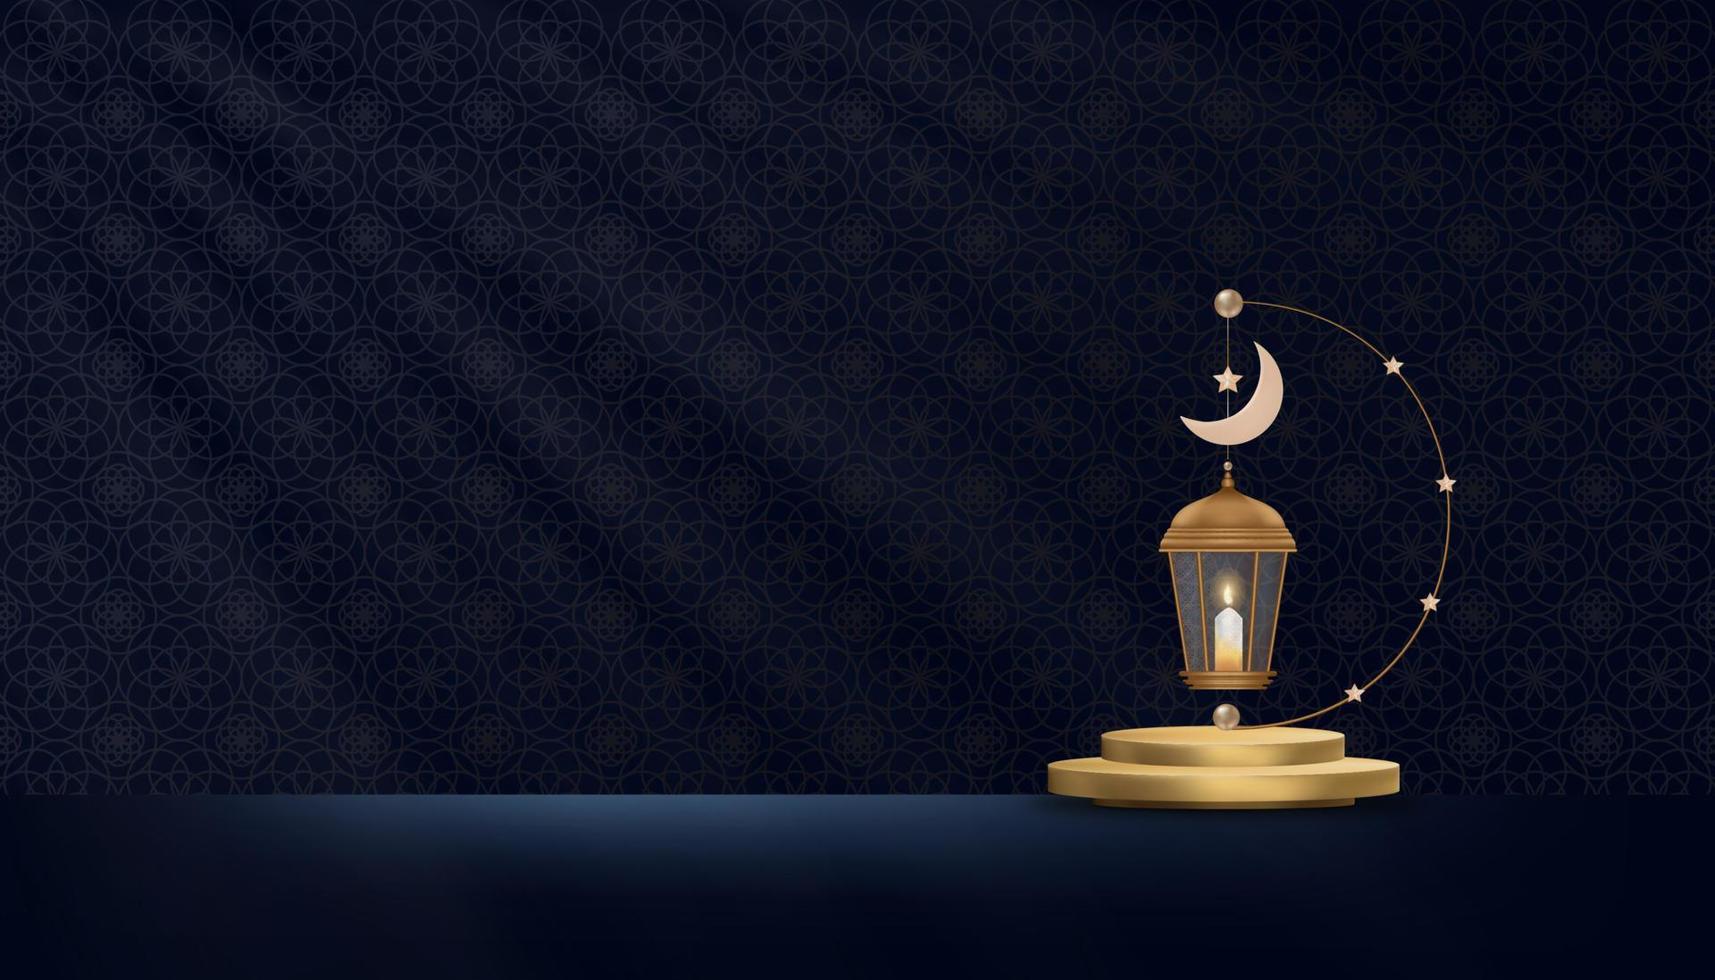 islamitisch podium met traditionele lantaarn met maansikkelachtergrond op drak blauwe baclground, vectorachtergrond van religie van moslim symbolisch, eid ul fitr, ramadan kareem, eid al adha, eid mubarak vector